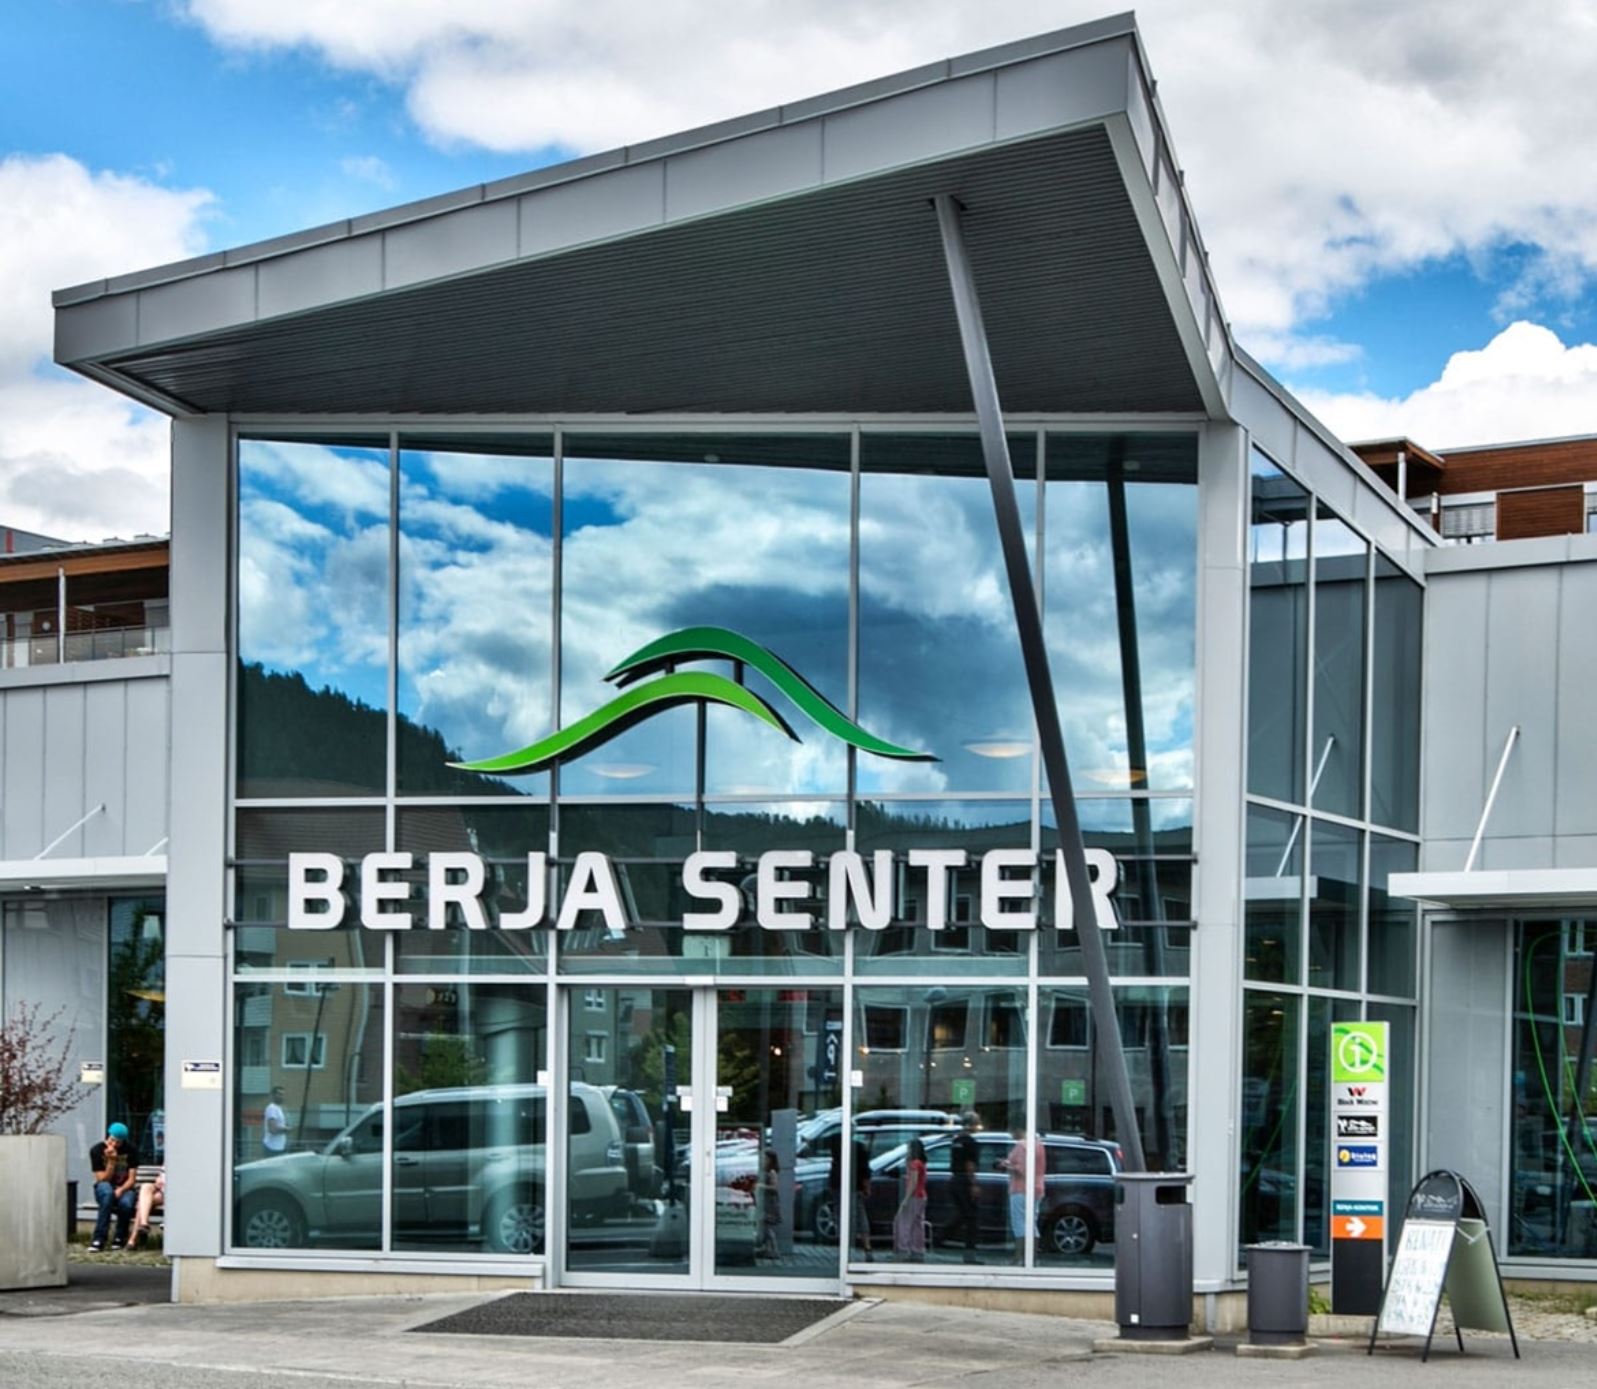 Autopay help customers park easily in Berja Senter's 495 parking spaces.